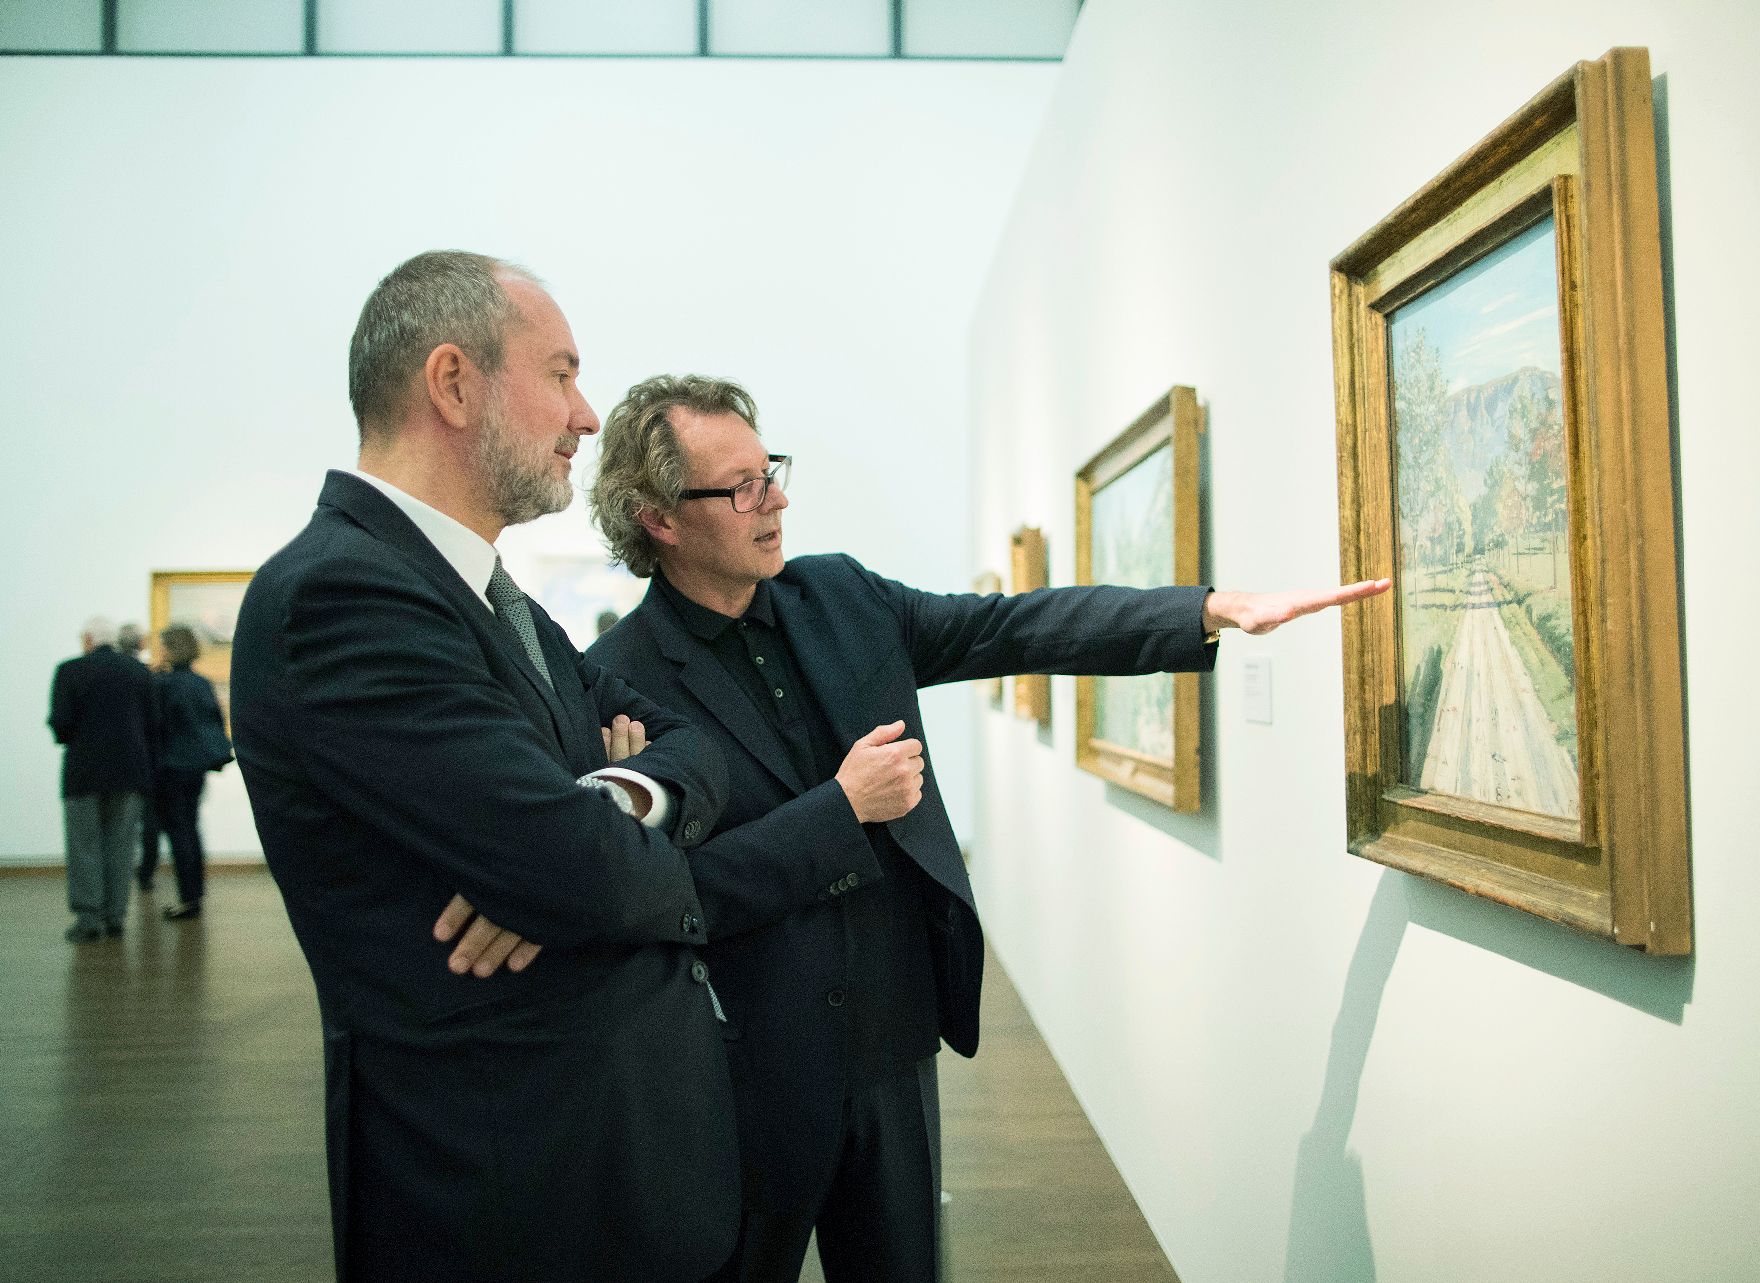 Am 12. Oktober 2017 fand die Ausstellungseröffnung "Ferdinand Hodler" im Leopold Museum statt. Im Bild Kunst- und Kulturminister Thomas Drozda (l.) mit dem Direktor des Leopold Museums Hans-Peter Wipplinger (r.) bei der Besichtigung der Ausstellung.